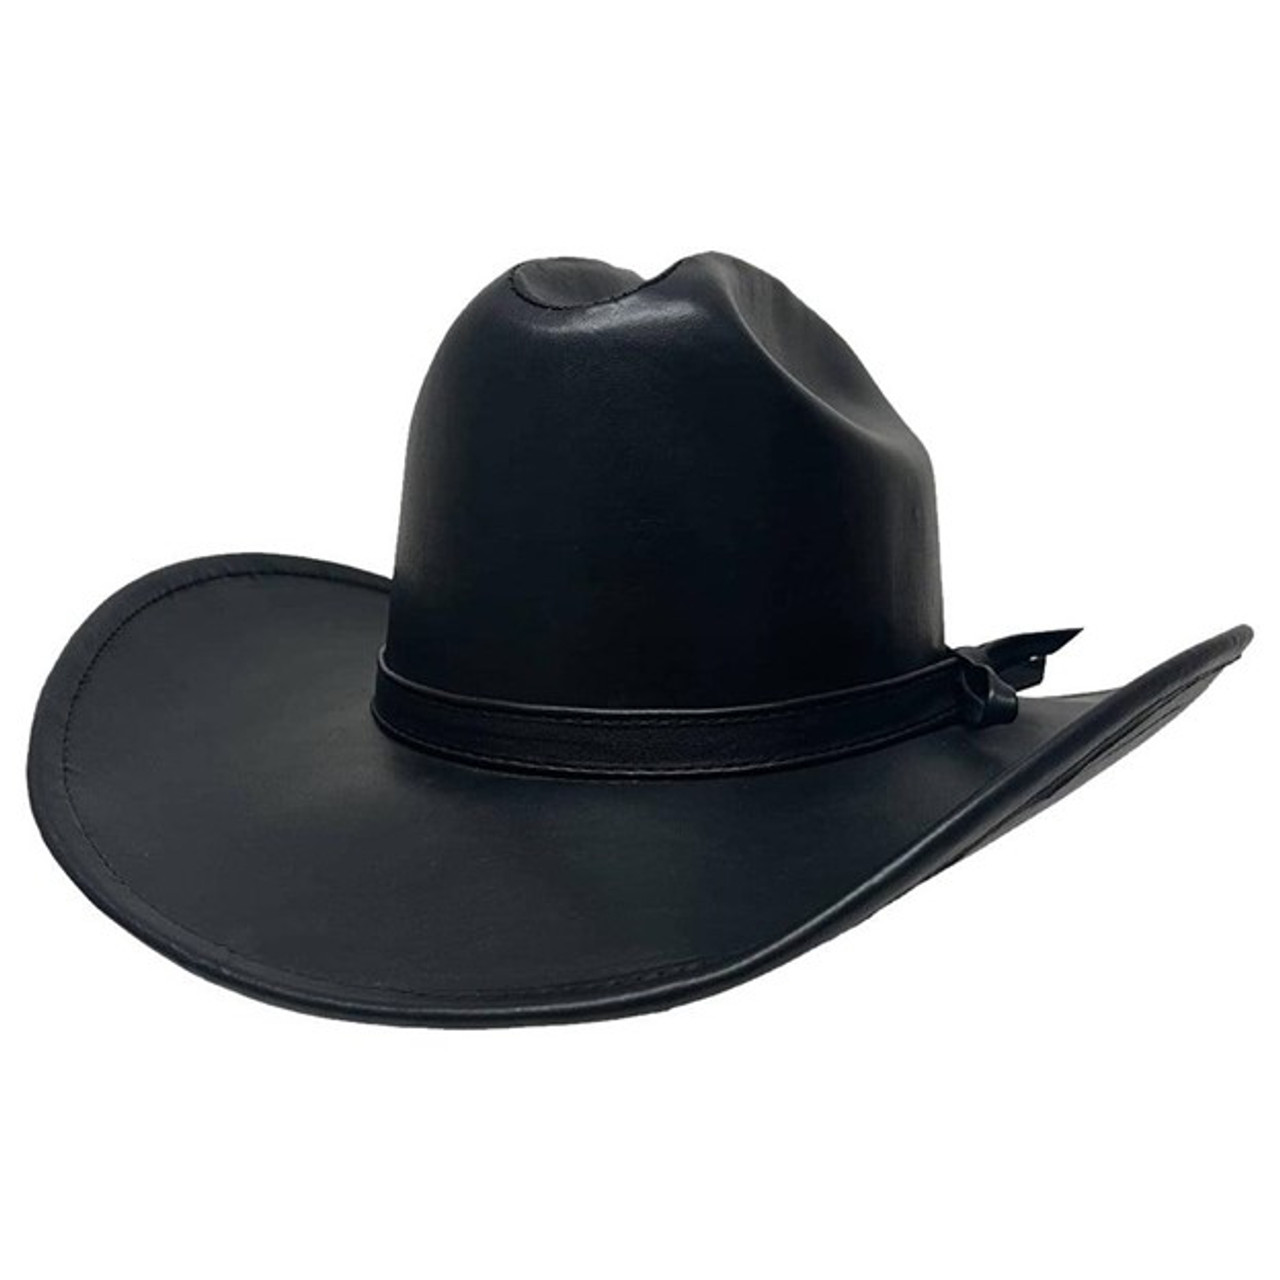 Gorge Cattleman Black Cowboy Hat